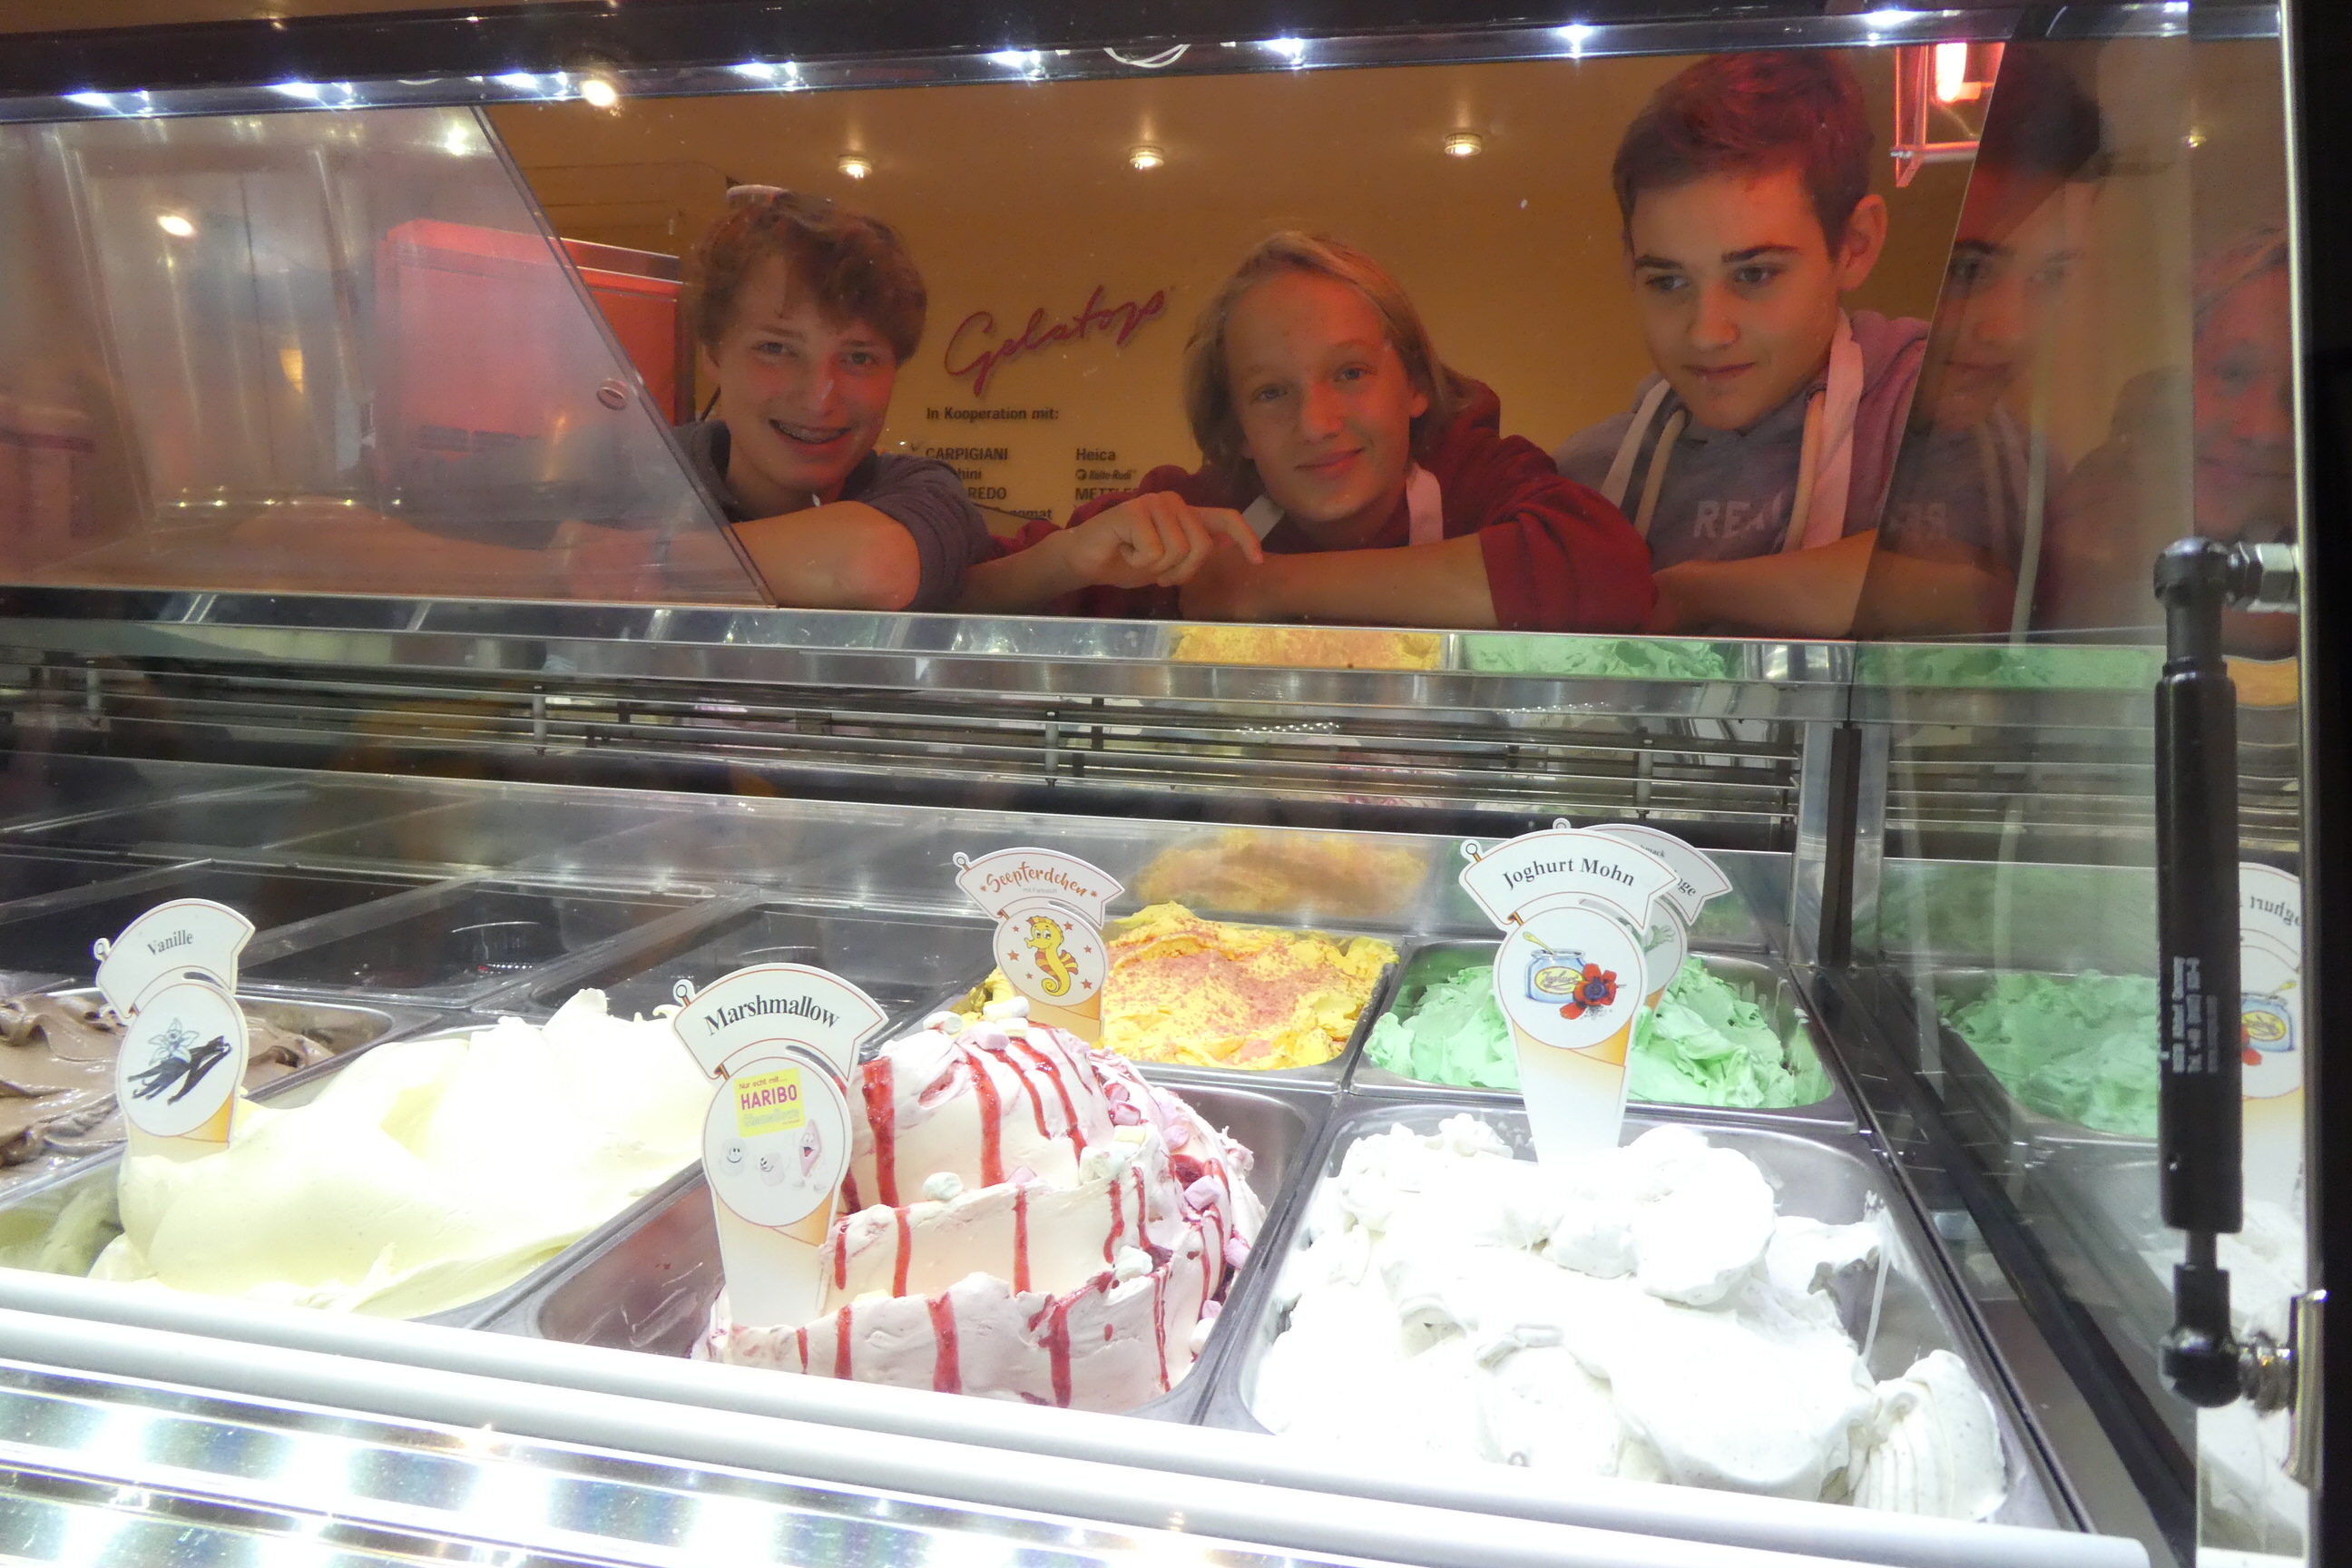 Nach der Eis-Bilanzierung freuen sich Luca, Luuk und Jannis darauf, gleich das selbstgemachte Eis zu probieren.